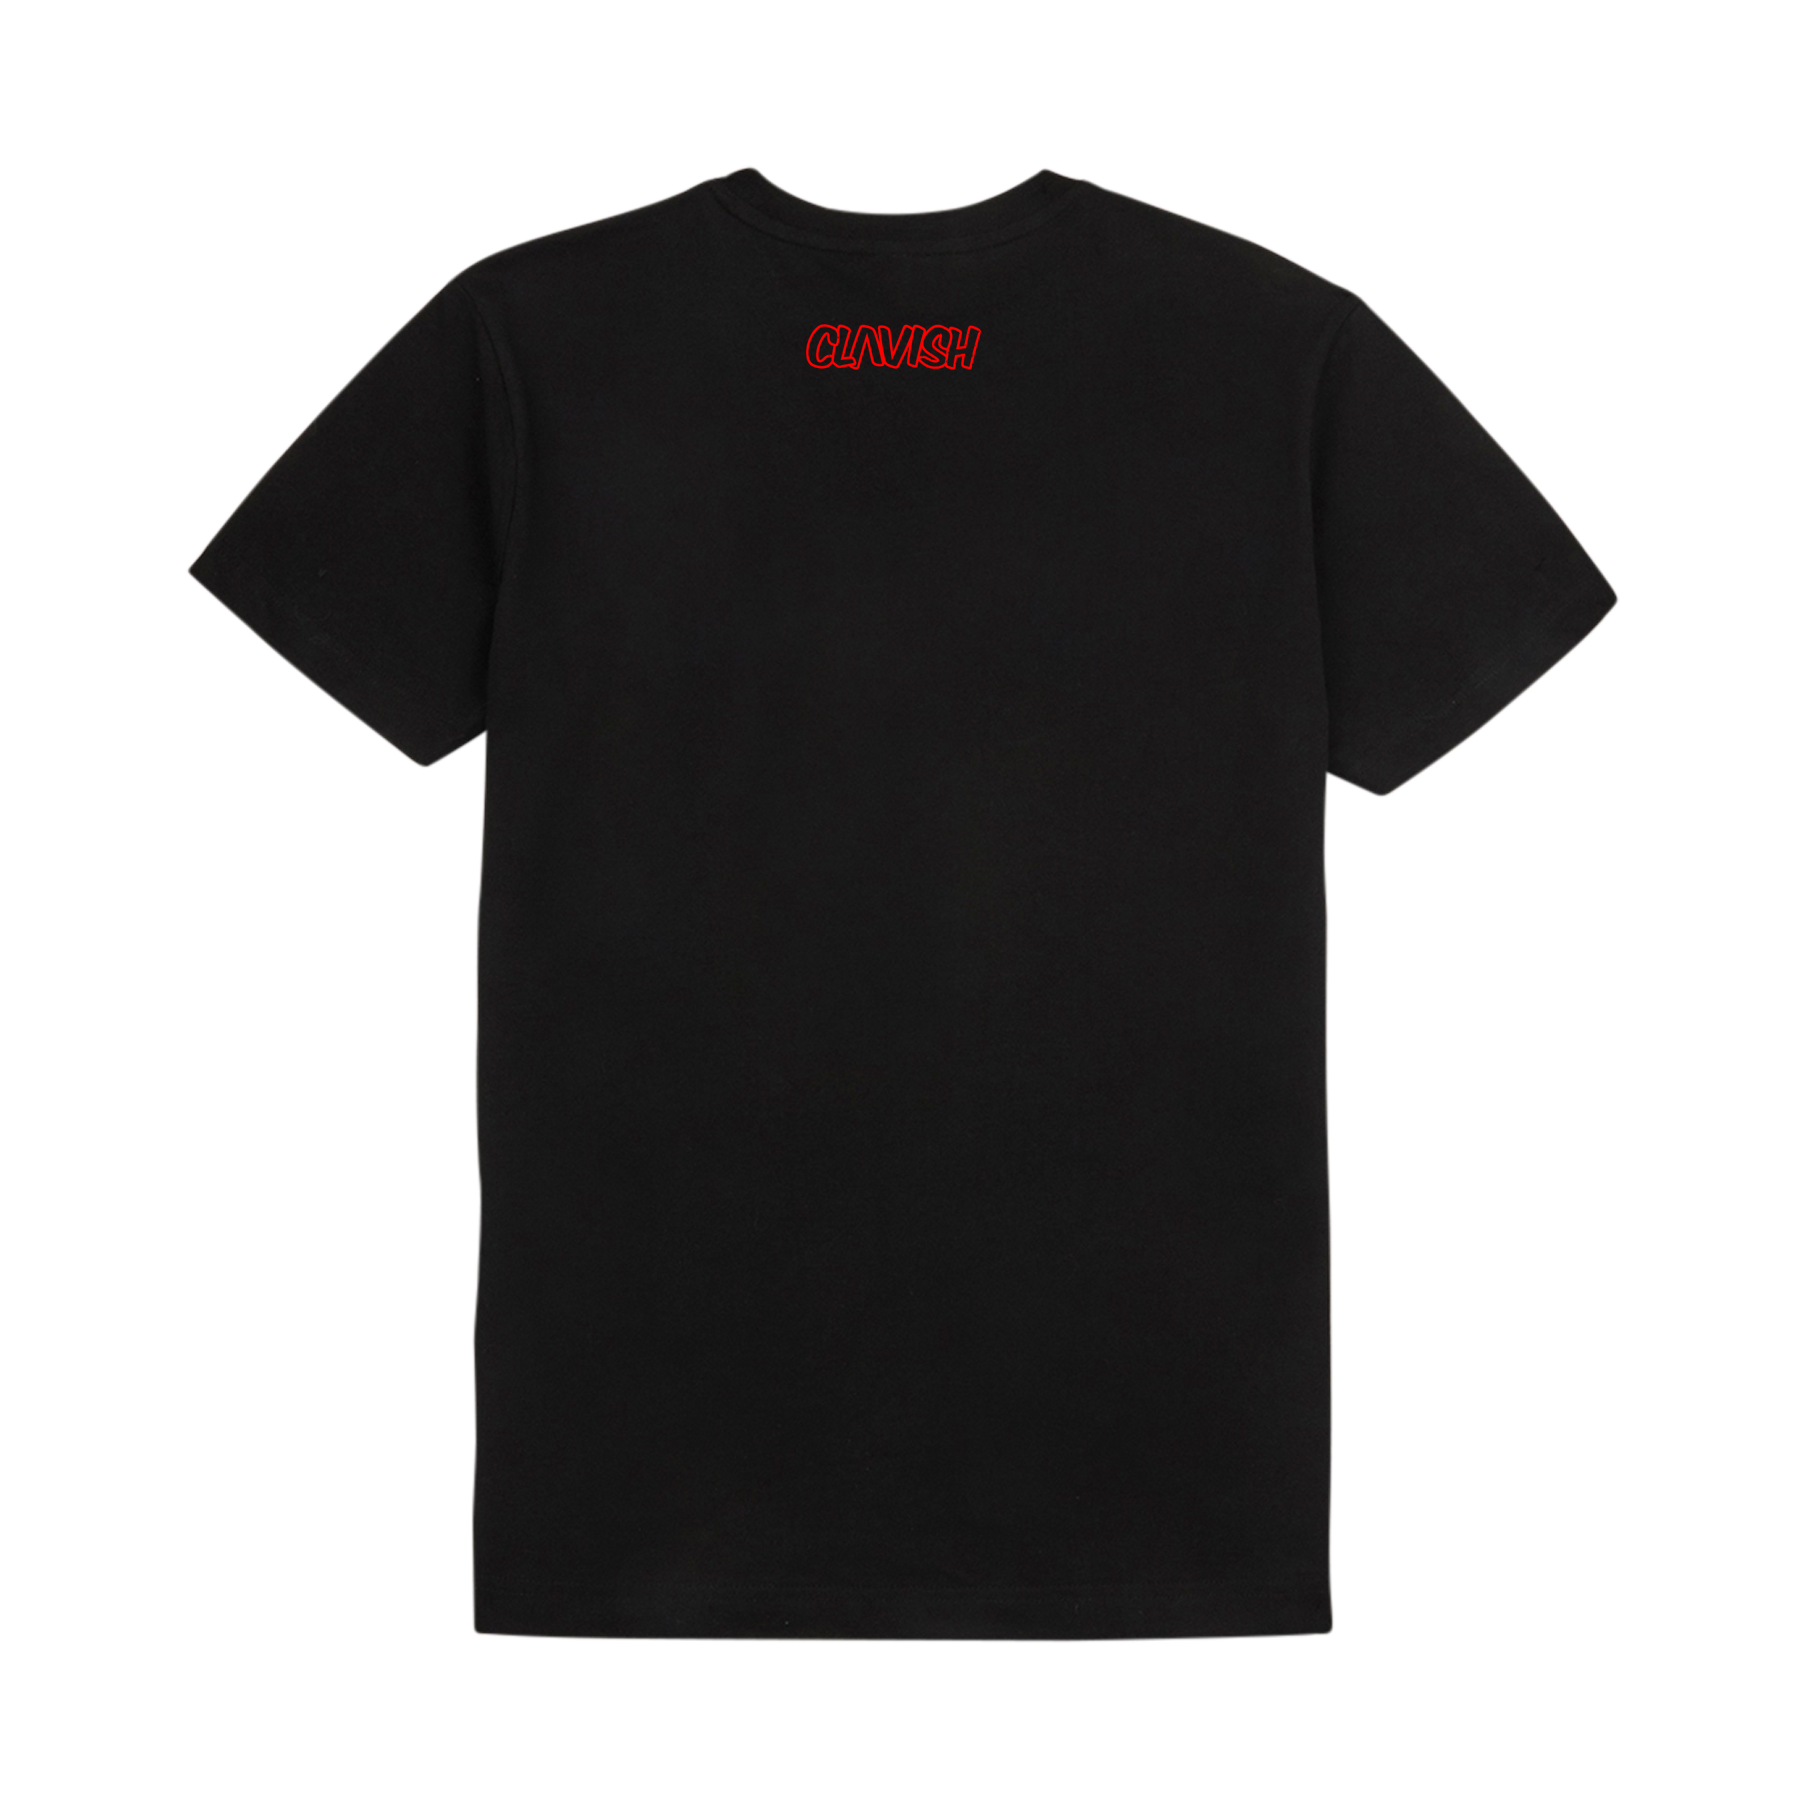 Clavish - Rap Game Awful: T-shirt (Black/Red)